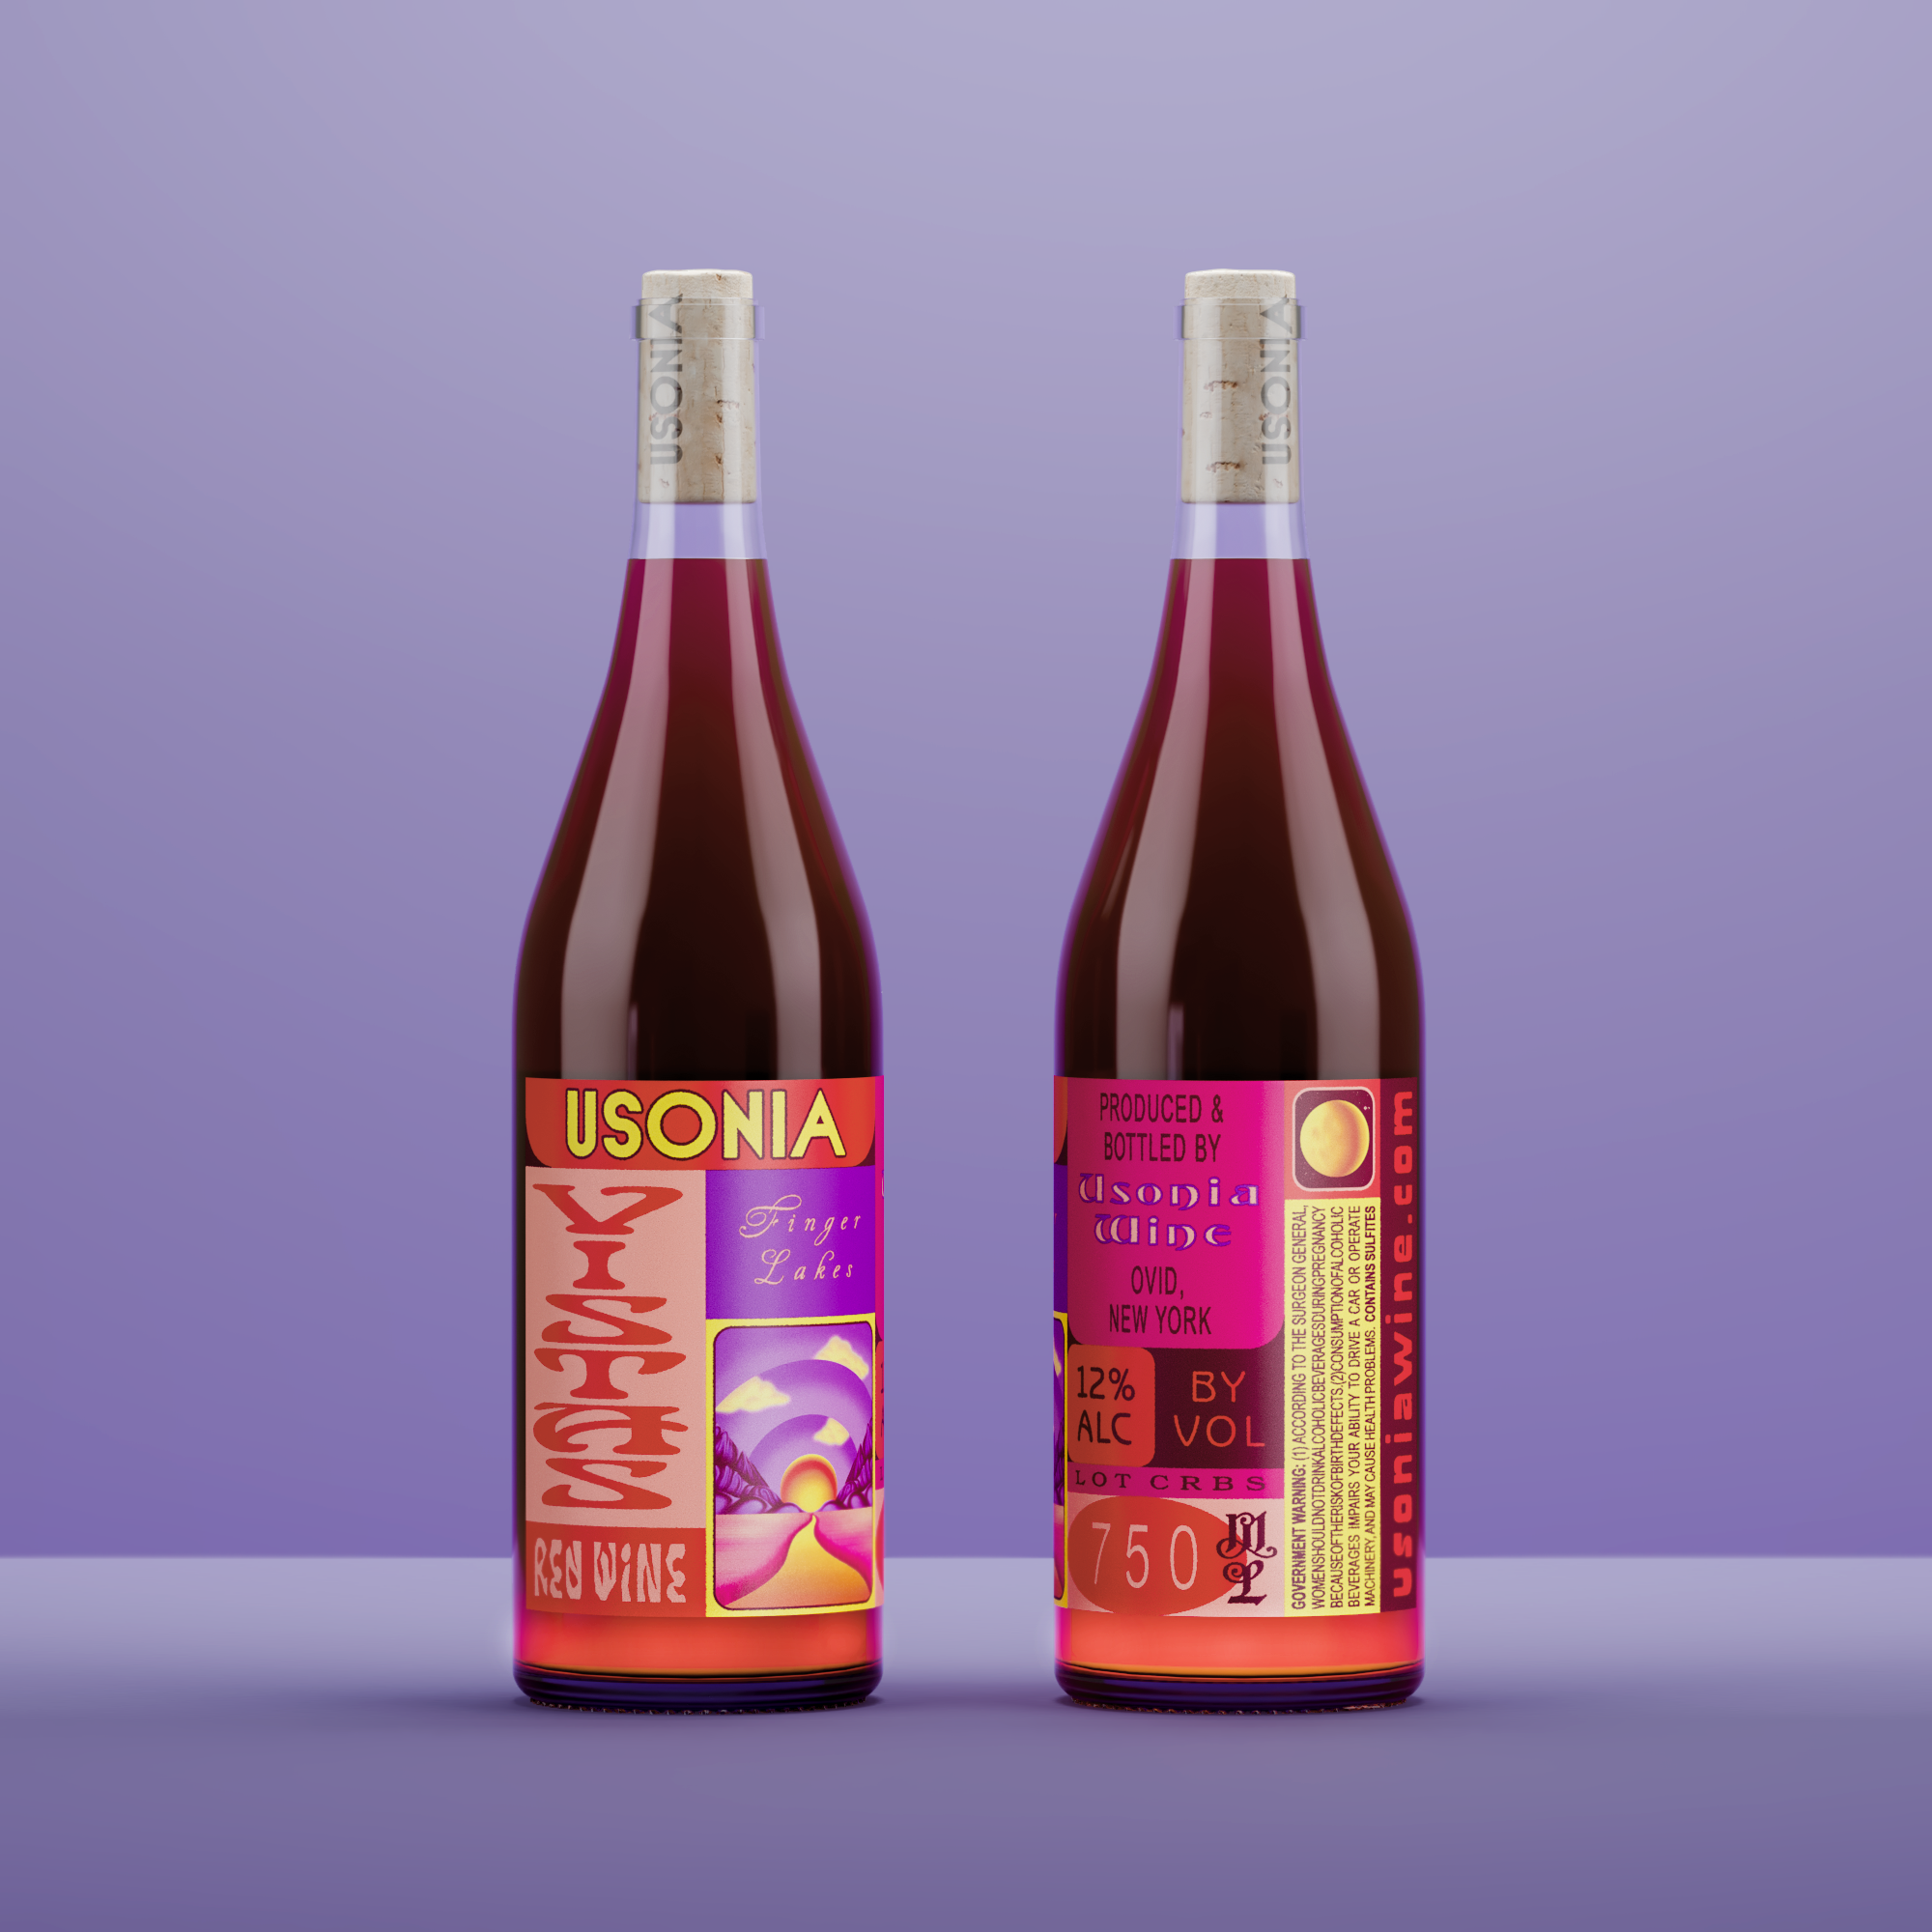 Usonia wine packaging